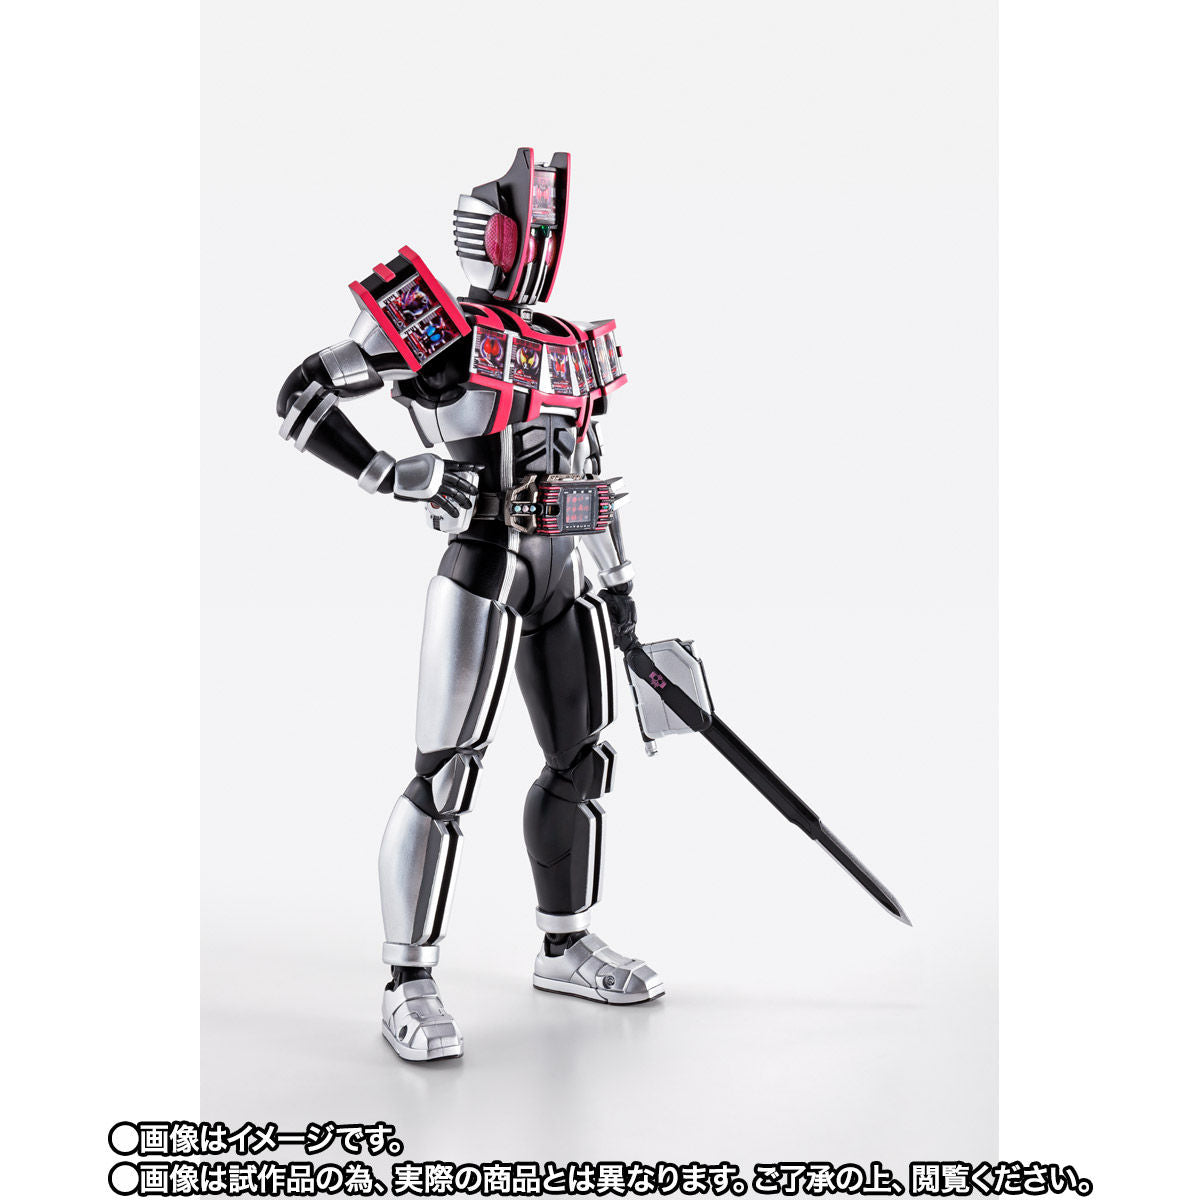 SH Figuarts Kamen Rider Decade Complete Form